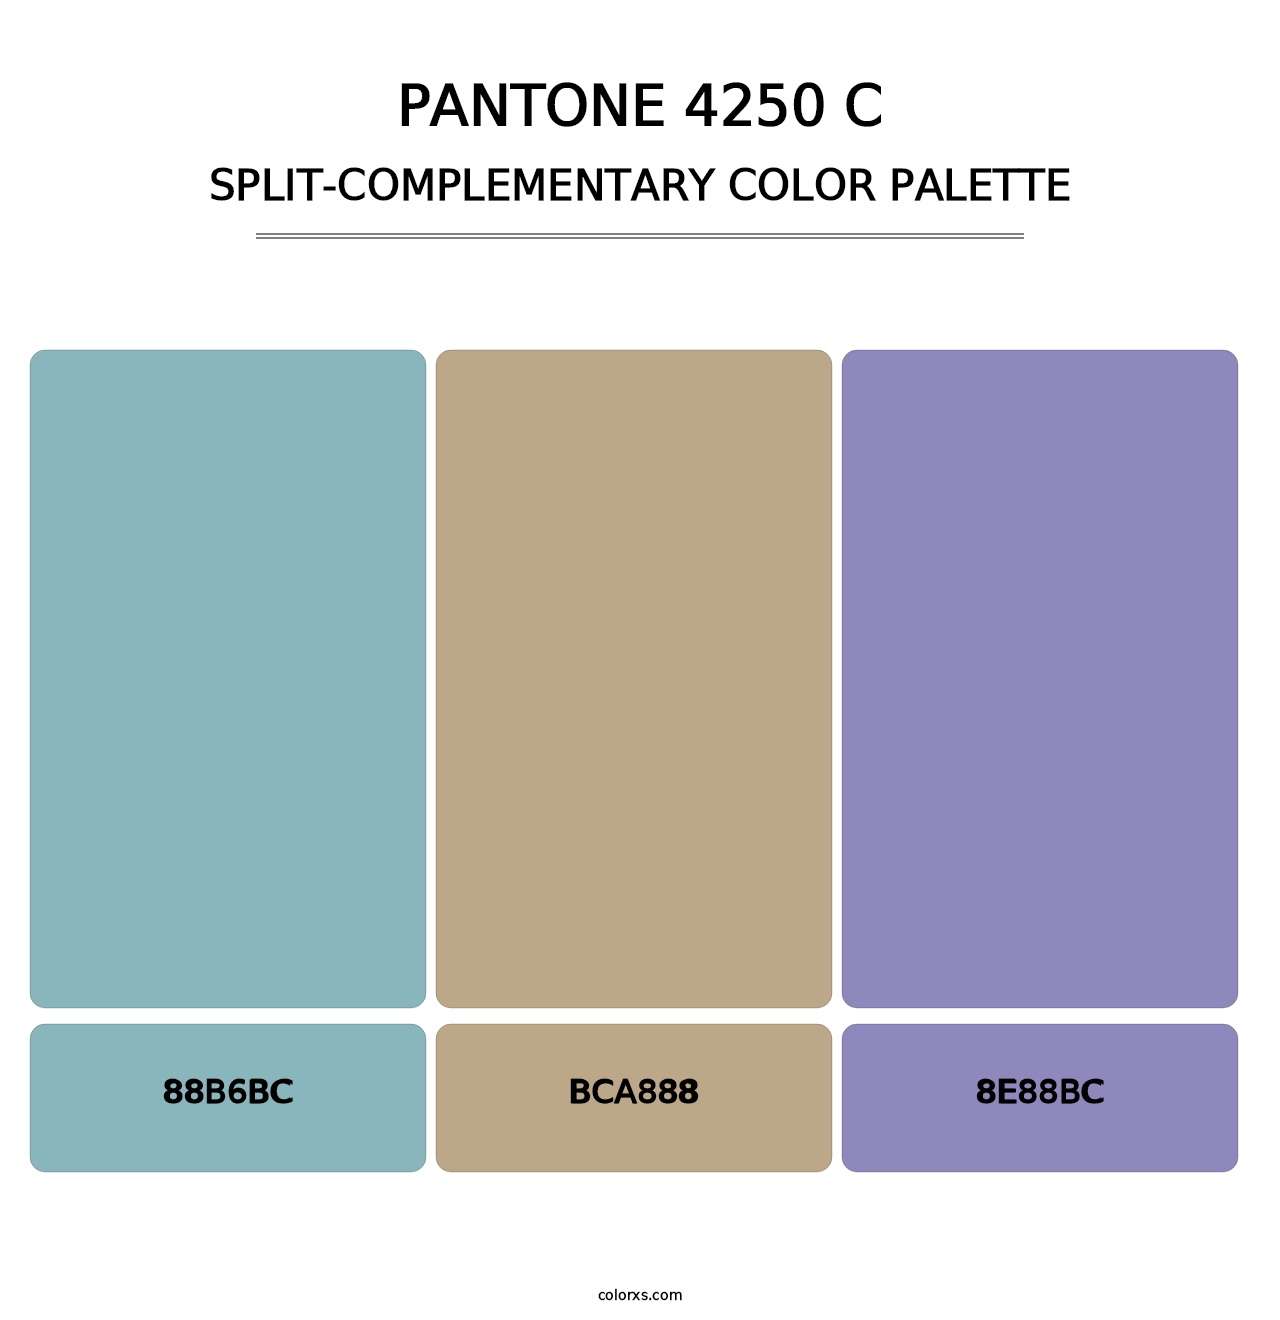 PANTONE 4250 C - Split-Complementary Color Palette